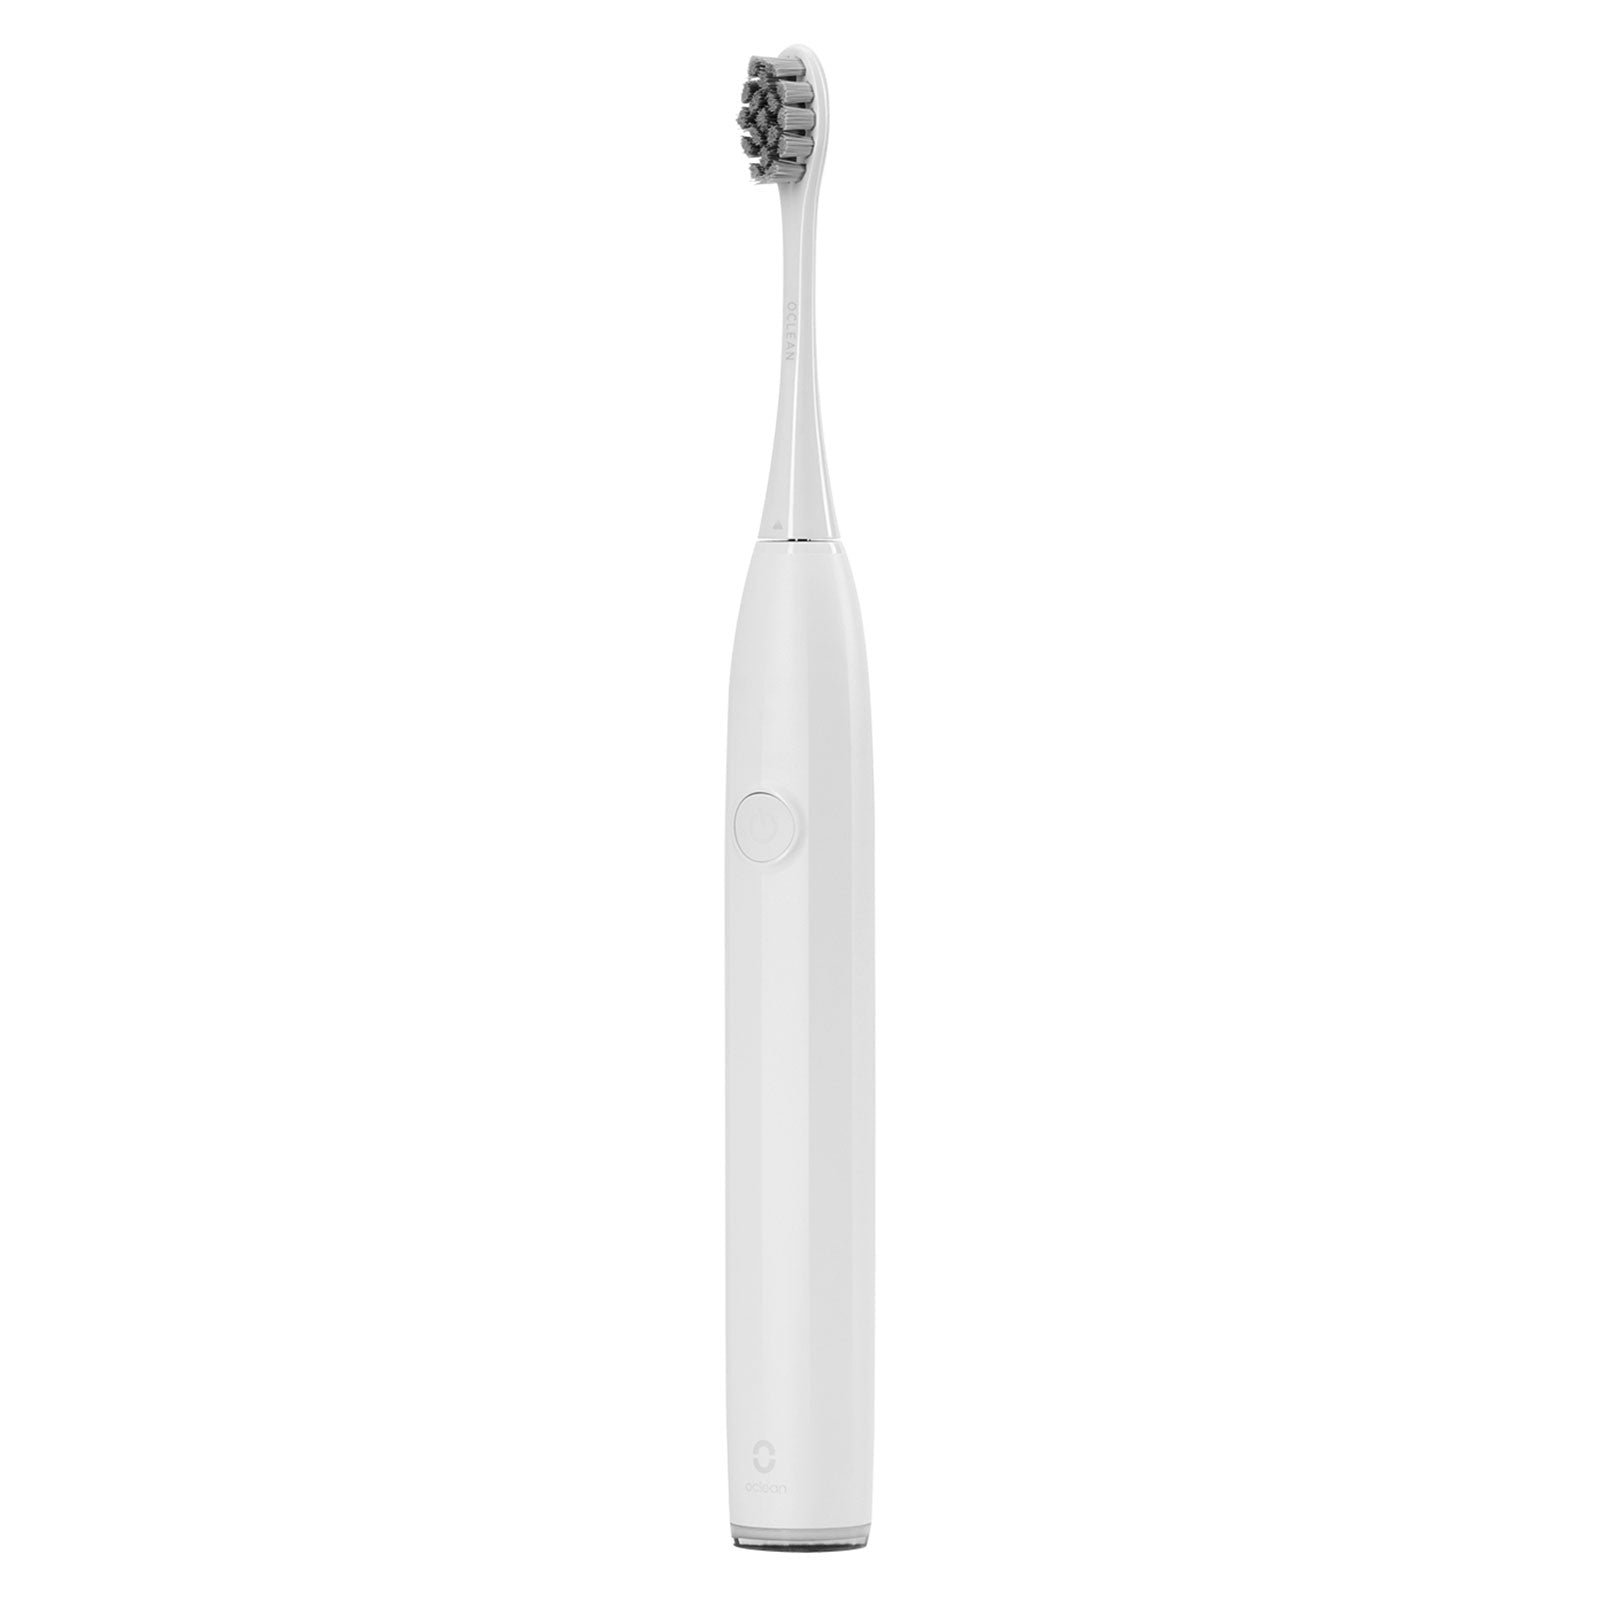 Oclean Endurance Eco - Elektrische tandenborstel - Speciaal ontworpen voor Beginners - Beschermd Tandvlees en Glazuur - Wit - C01000424